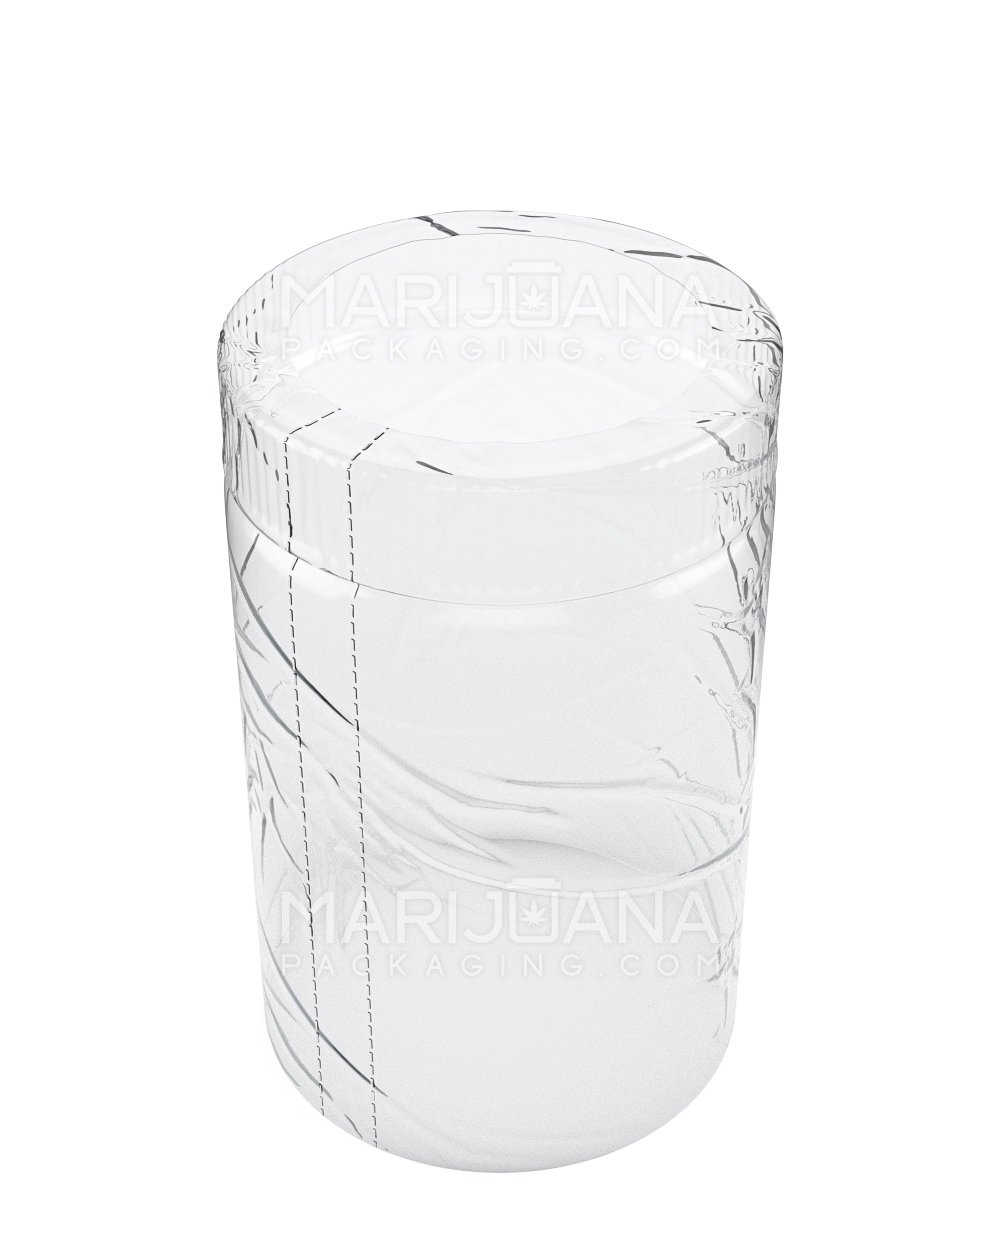 Tamper Evident | Heat Shrink Bands for Jars | 10oz - Clear Plastic - 1000 Count - 1